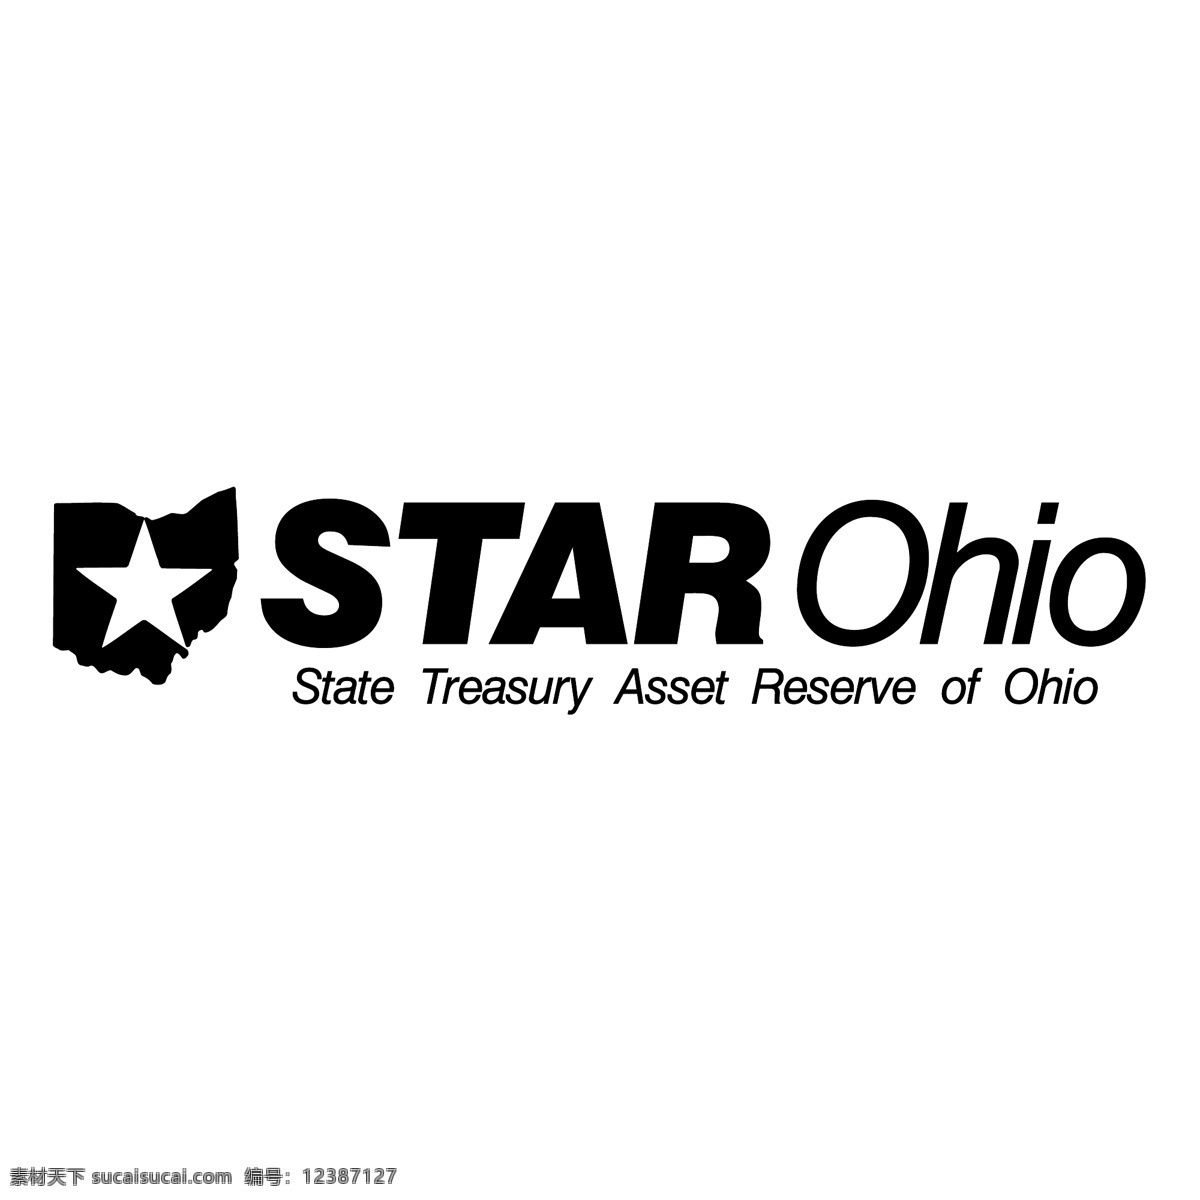 明星 明星图片 星星图案 俄亥俄州 星星 矢量 艺术 免费 载体 明星艺术载体 载体的明星 自由和明星 图形